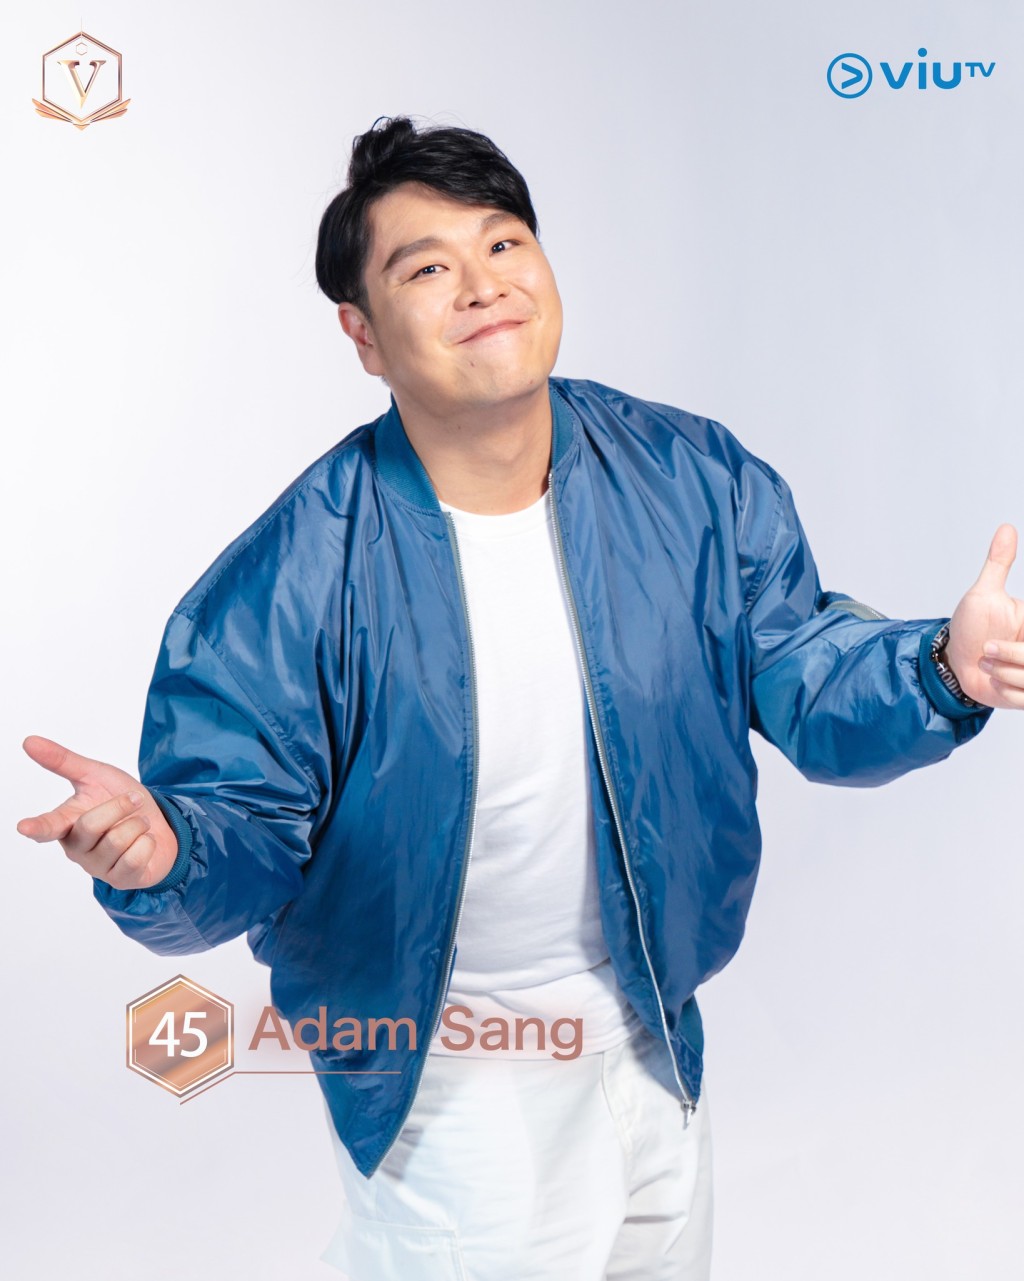 郑如川（Adam Sang） 年龄： 35 职业： 创作歌手 擅长： 作曲、作词、自弹自唱、音乐 IG：adam_sang #吉隆坡参赛者